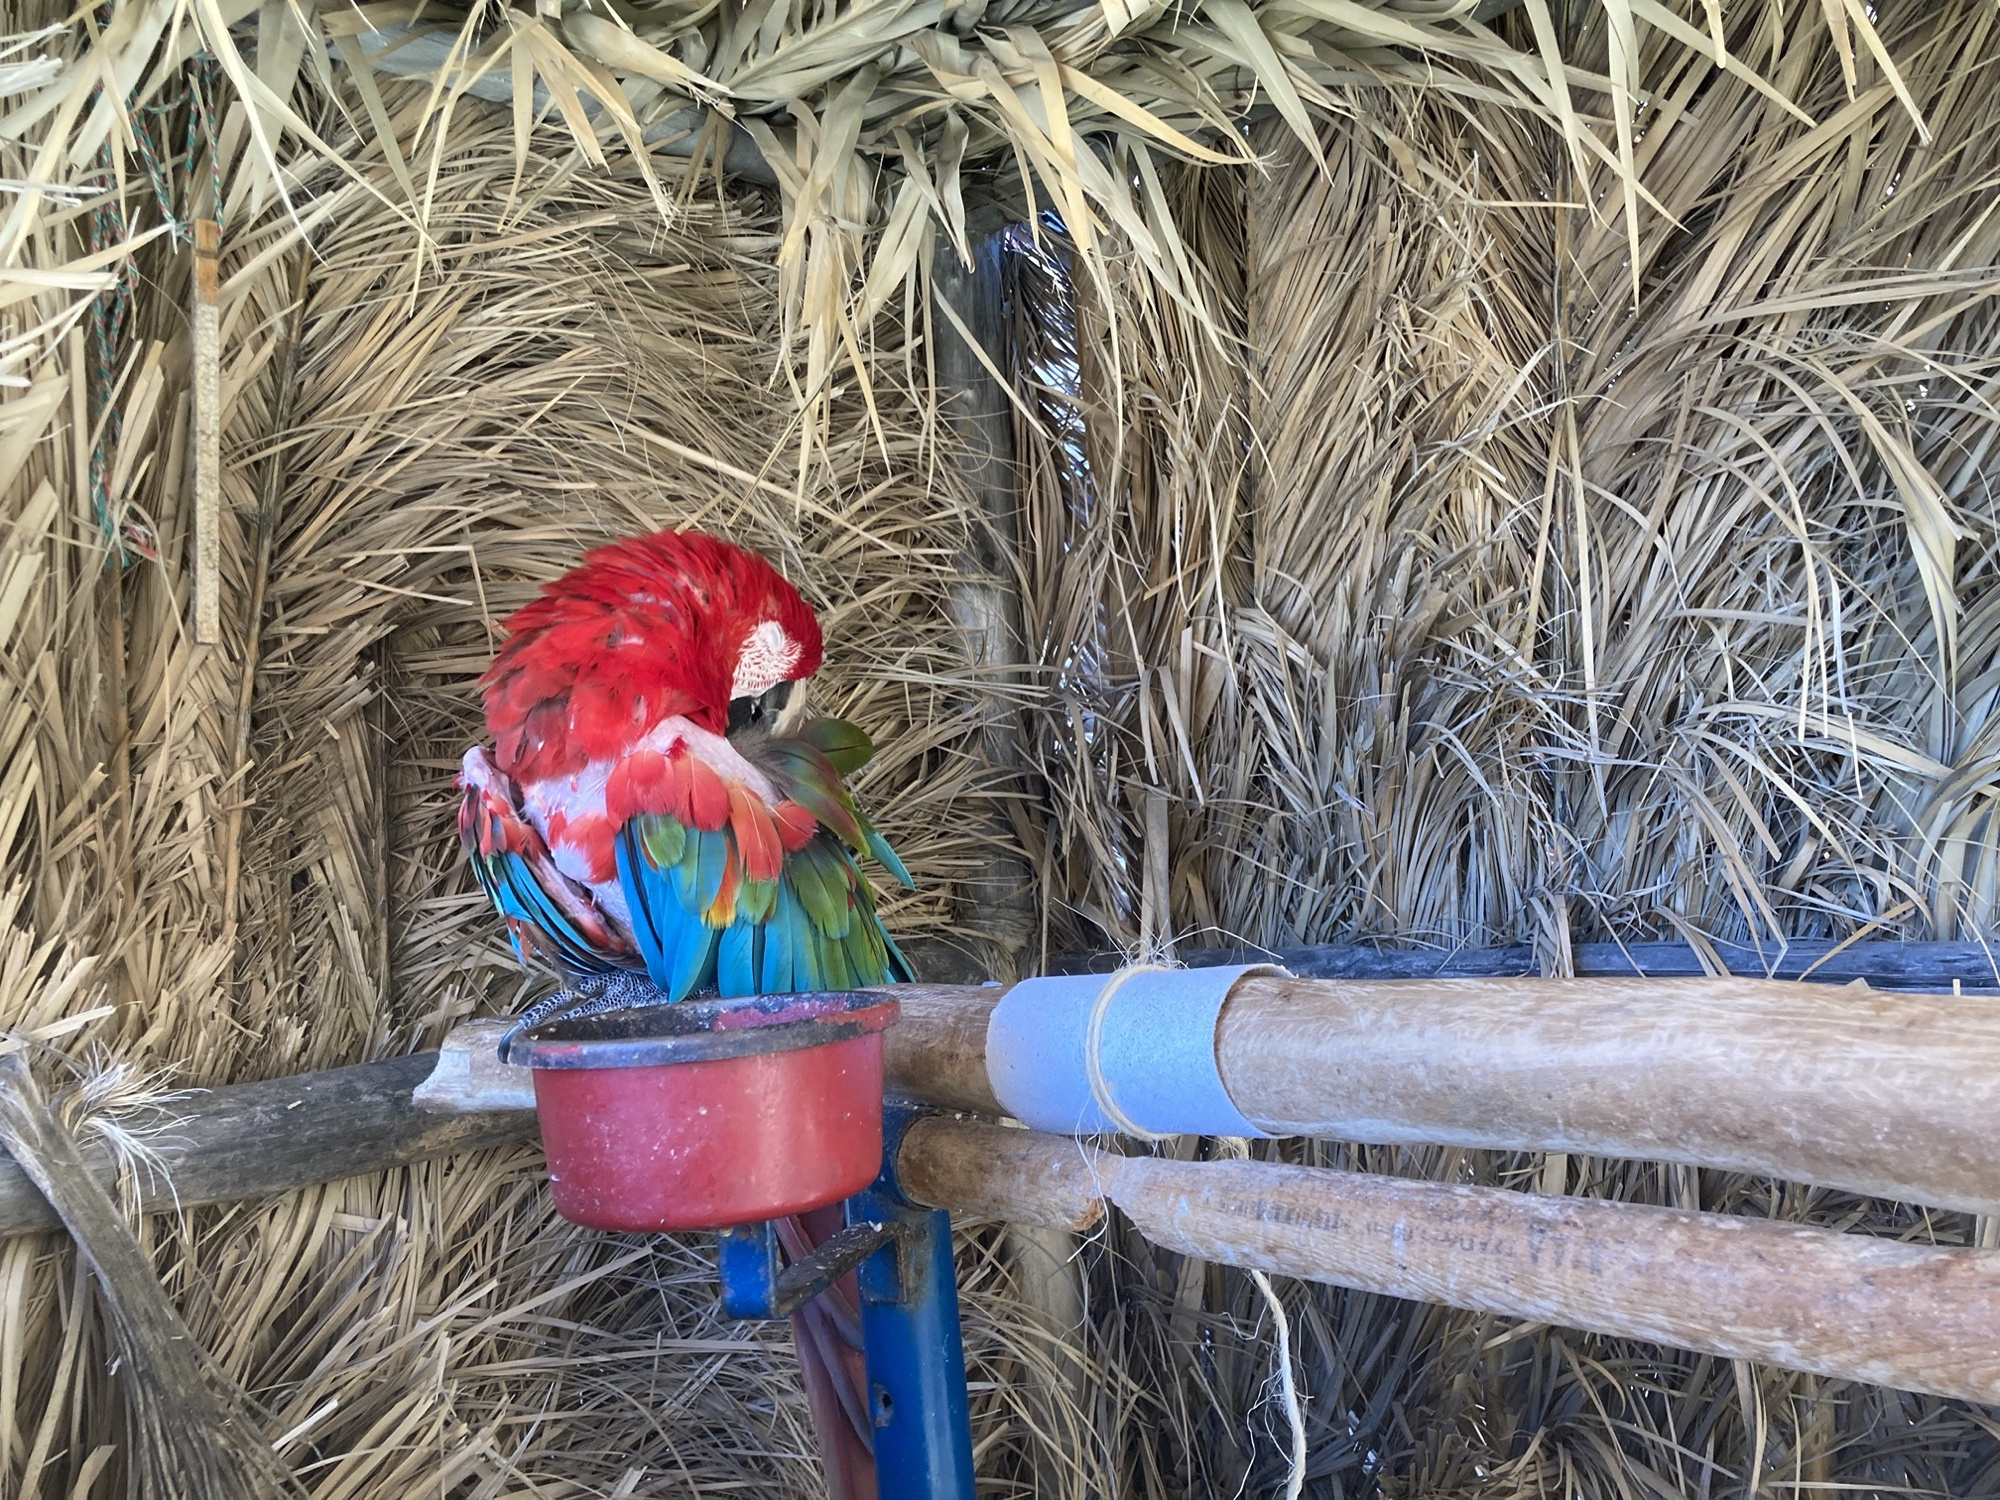 auf einer Holzkonstruktion sitzt ein schlafender roter Papagei, sein Gefieder ist recht zerfleddert, den Kopf hat er nach hinten gedreht und den Schnabel in den Federn versteckt